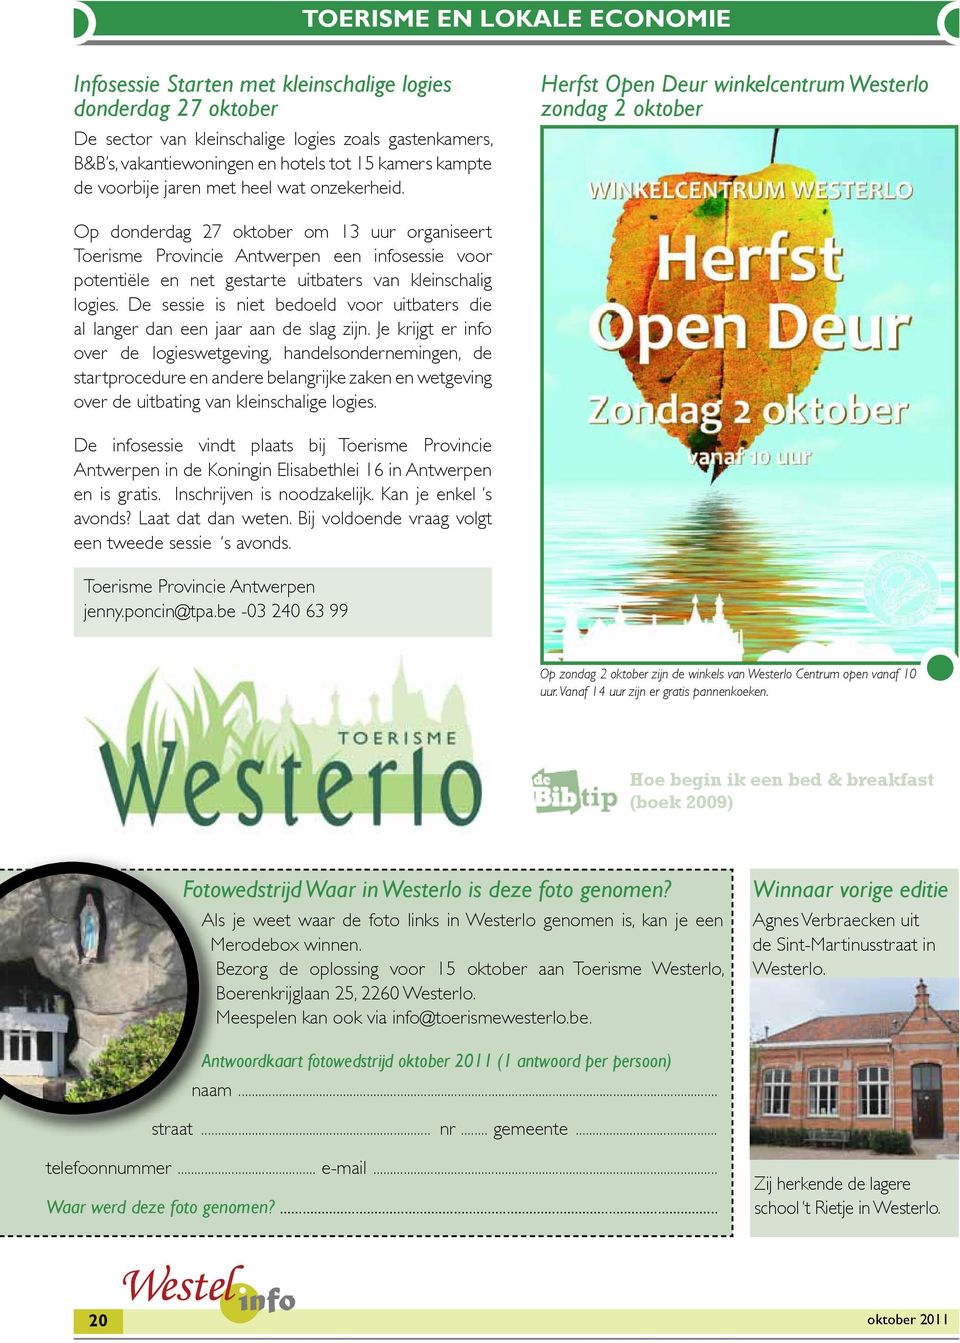 Herfst Open Deur winkelcentrum Westerlo zondag 2 oktober Op donderdag 27 oktober om 13 uur organiseert Toerisme Provincie Antwerpen een infosessie voor potentiële en net gestarte uitbaters van